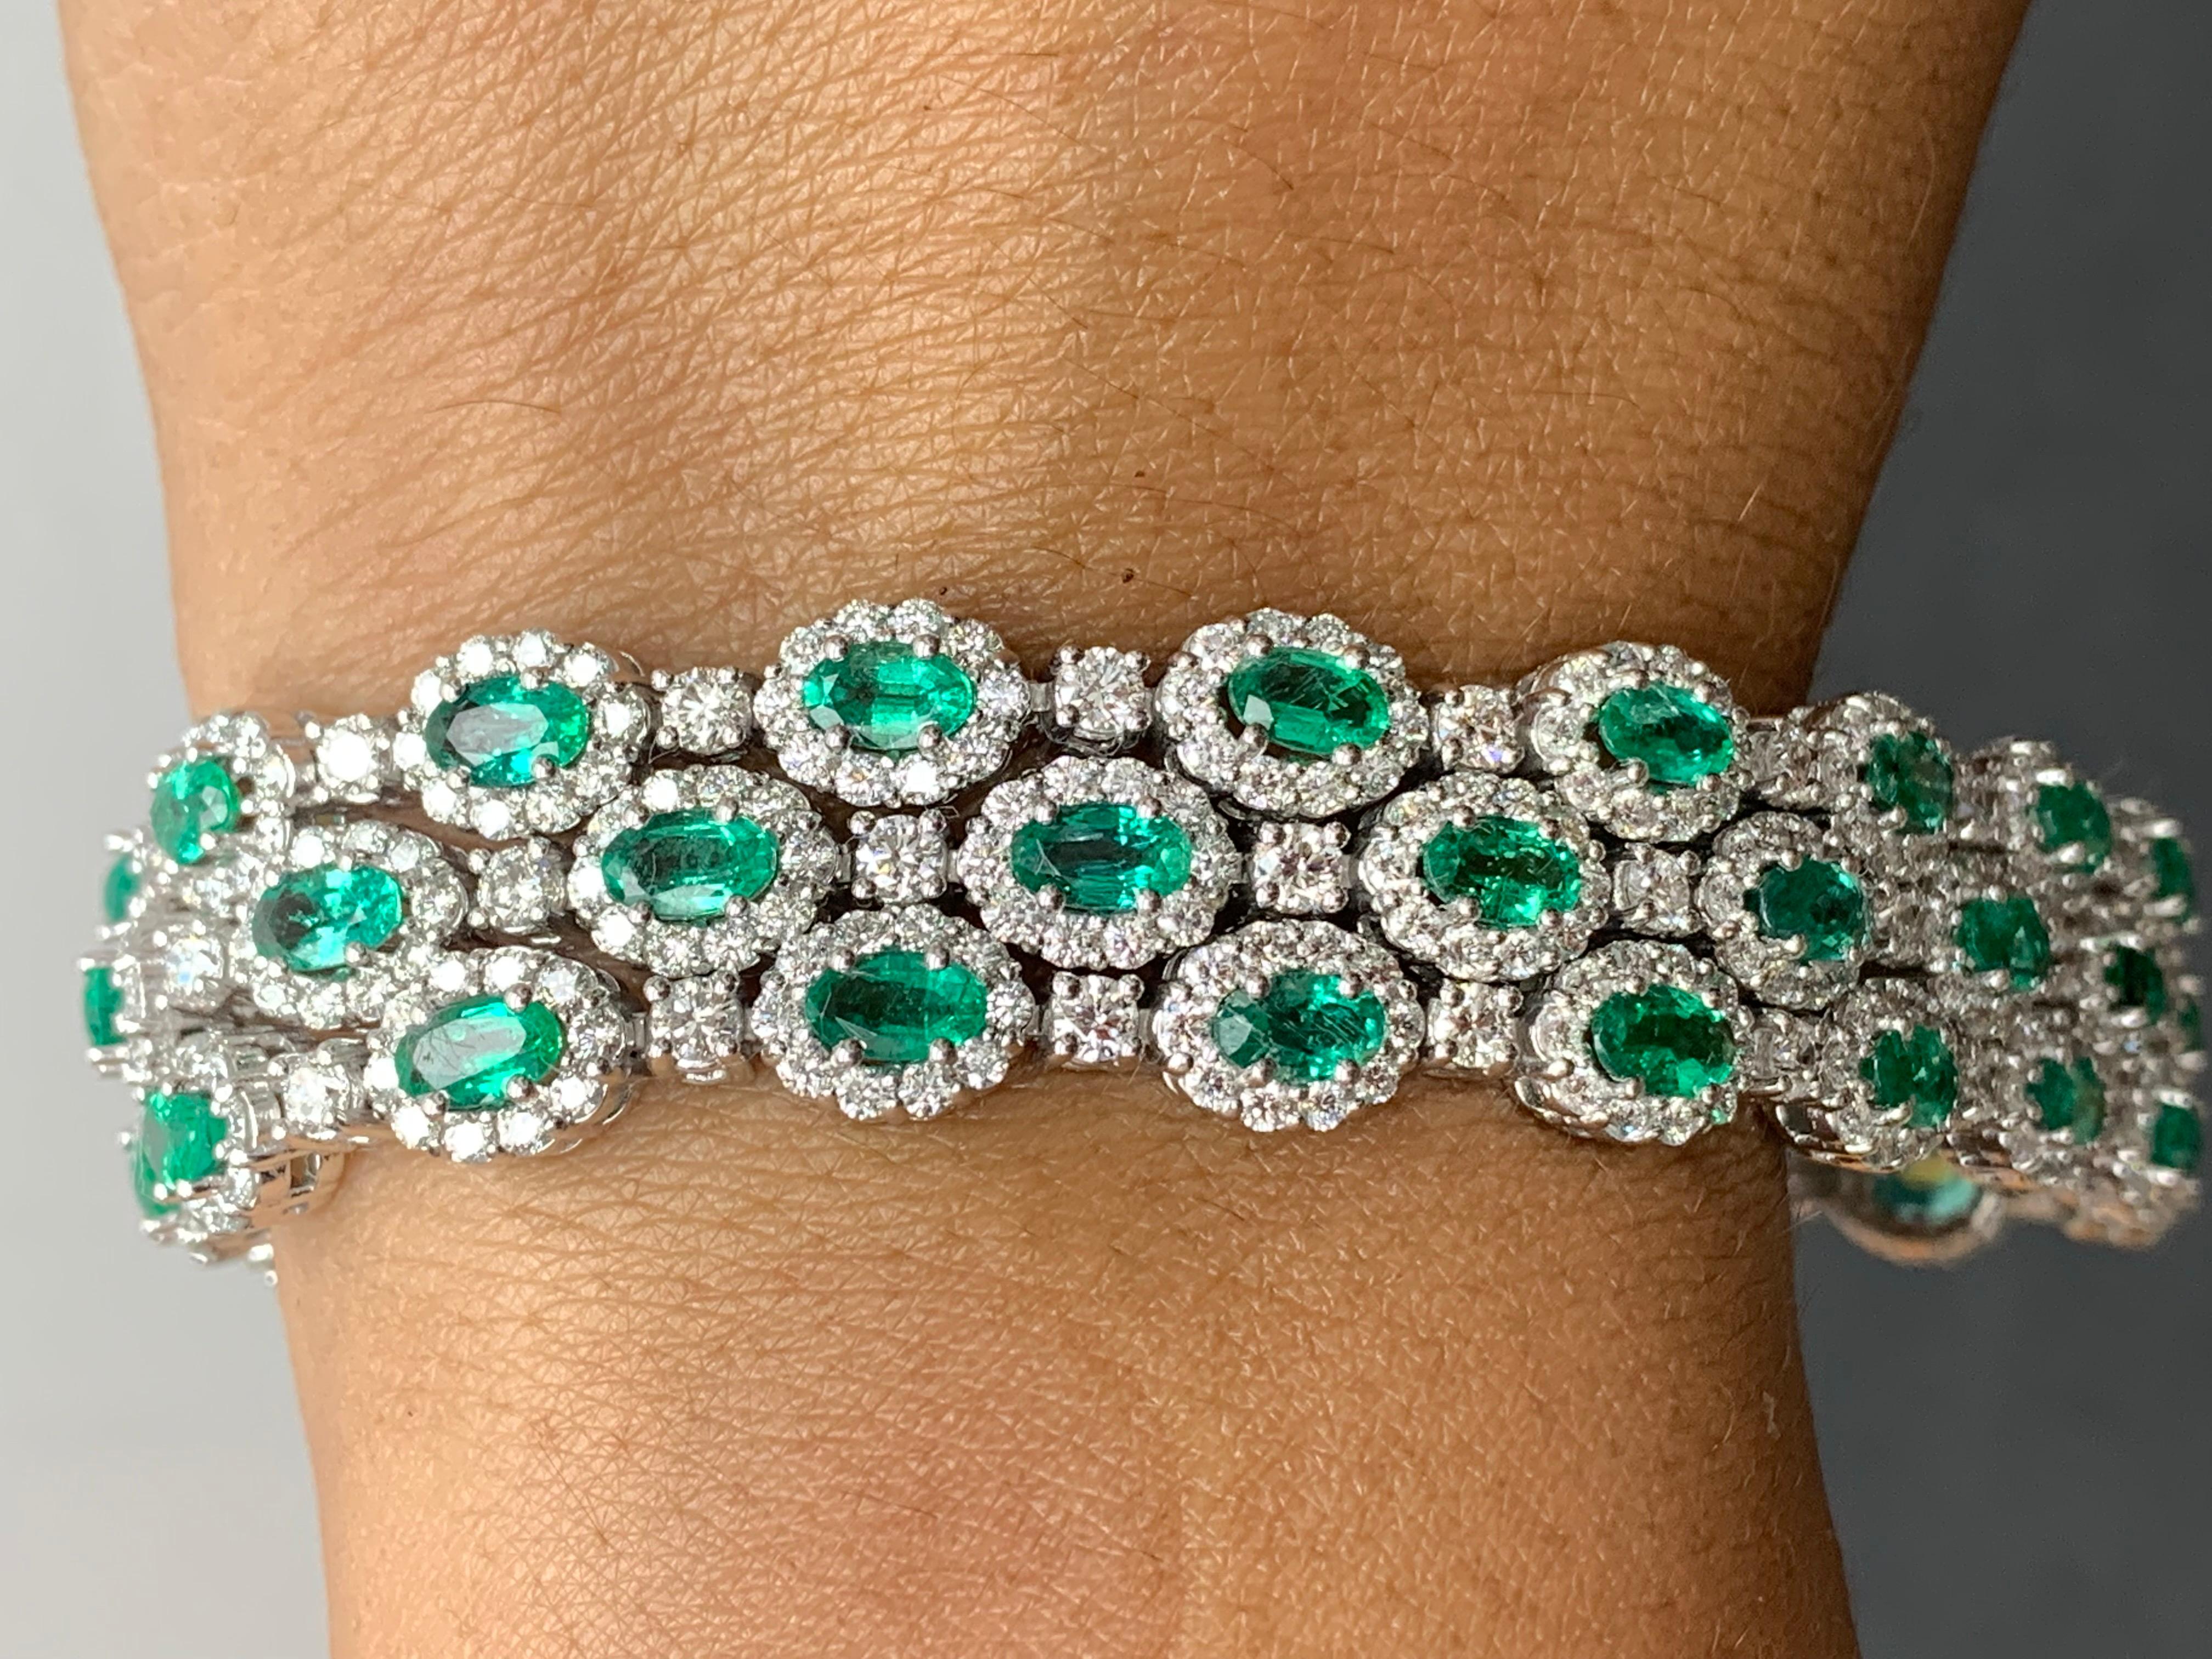 Un magnifique bracelet à trois rangs d'émeraudes et de diamants d'un vert luxuriant, mettant en valeur des émeraudes riches en couleurs, entourées d'une seule rangée de diamants ronds brillants. 51 émeraudes de taille ovale pèsent 10,95 carats au